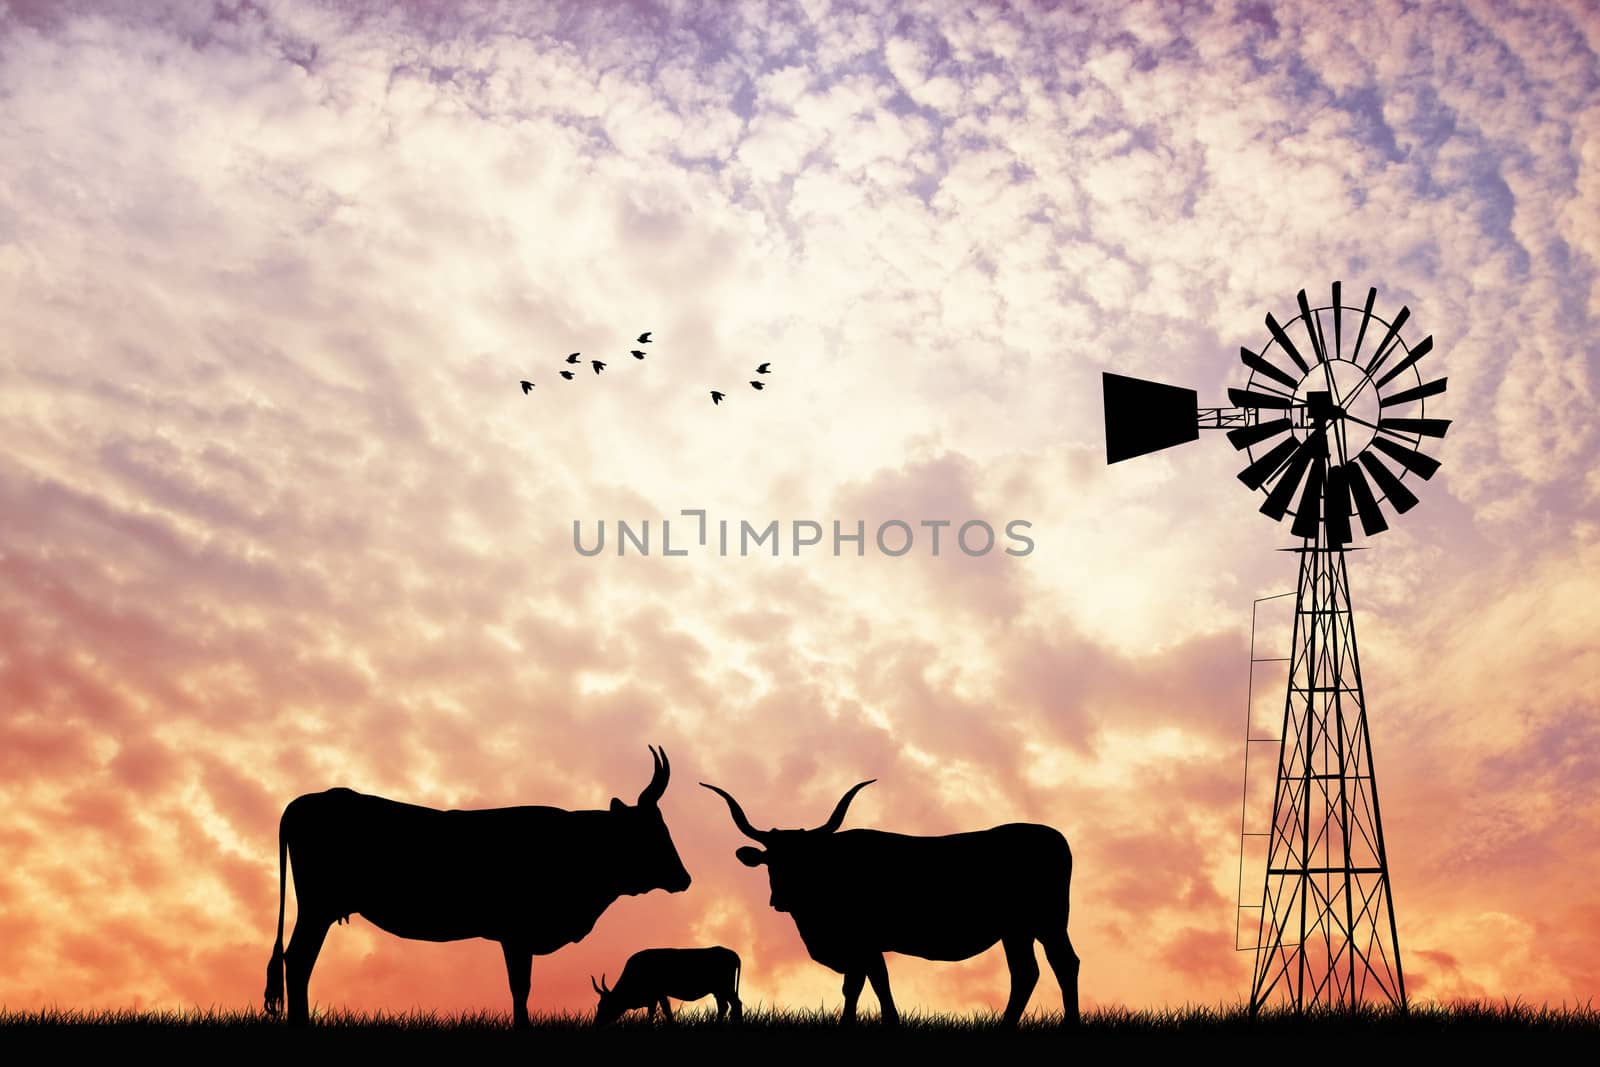 cows at sunset by adrenalina